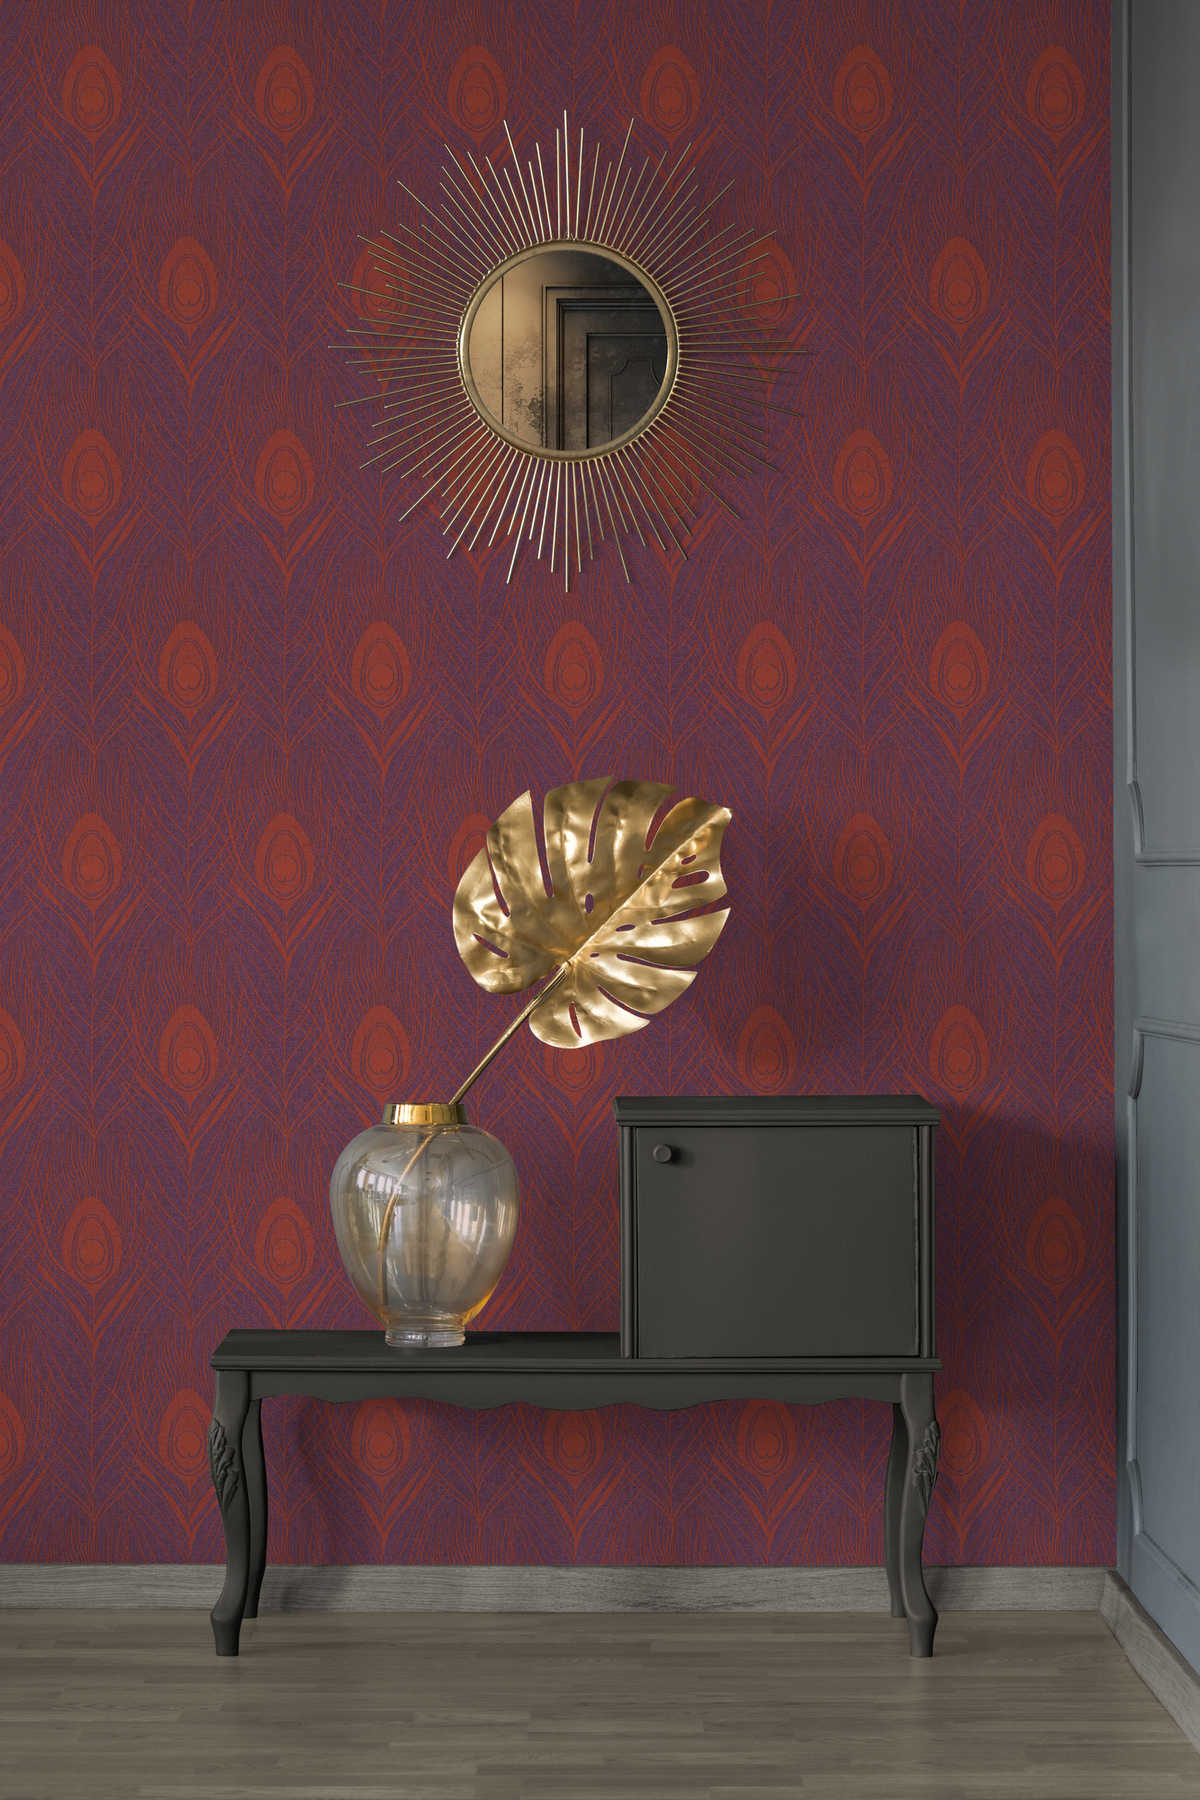             Magenta vliesbehang met pauwenveren - rood, paars, goud
        